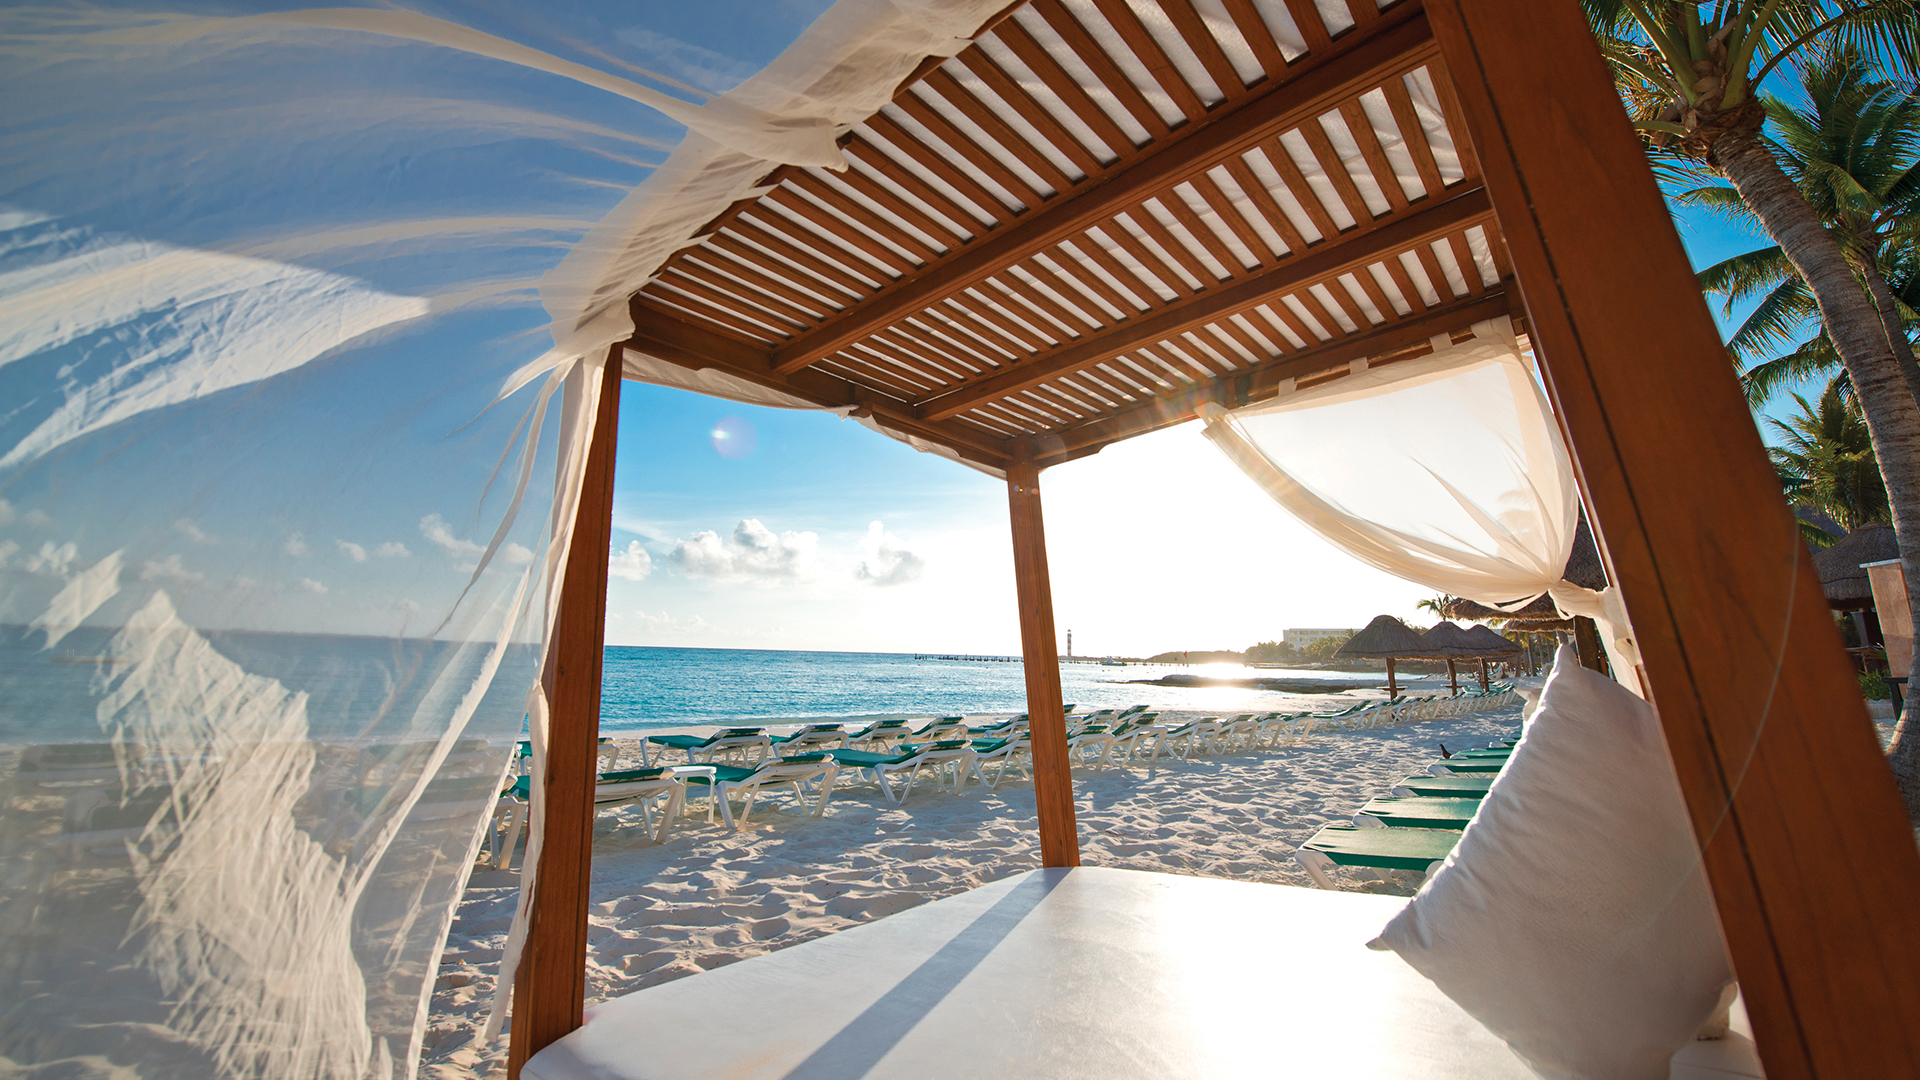 Private beach cabana in Cancun